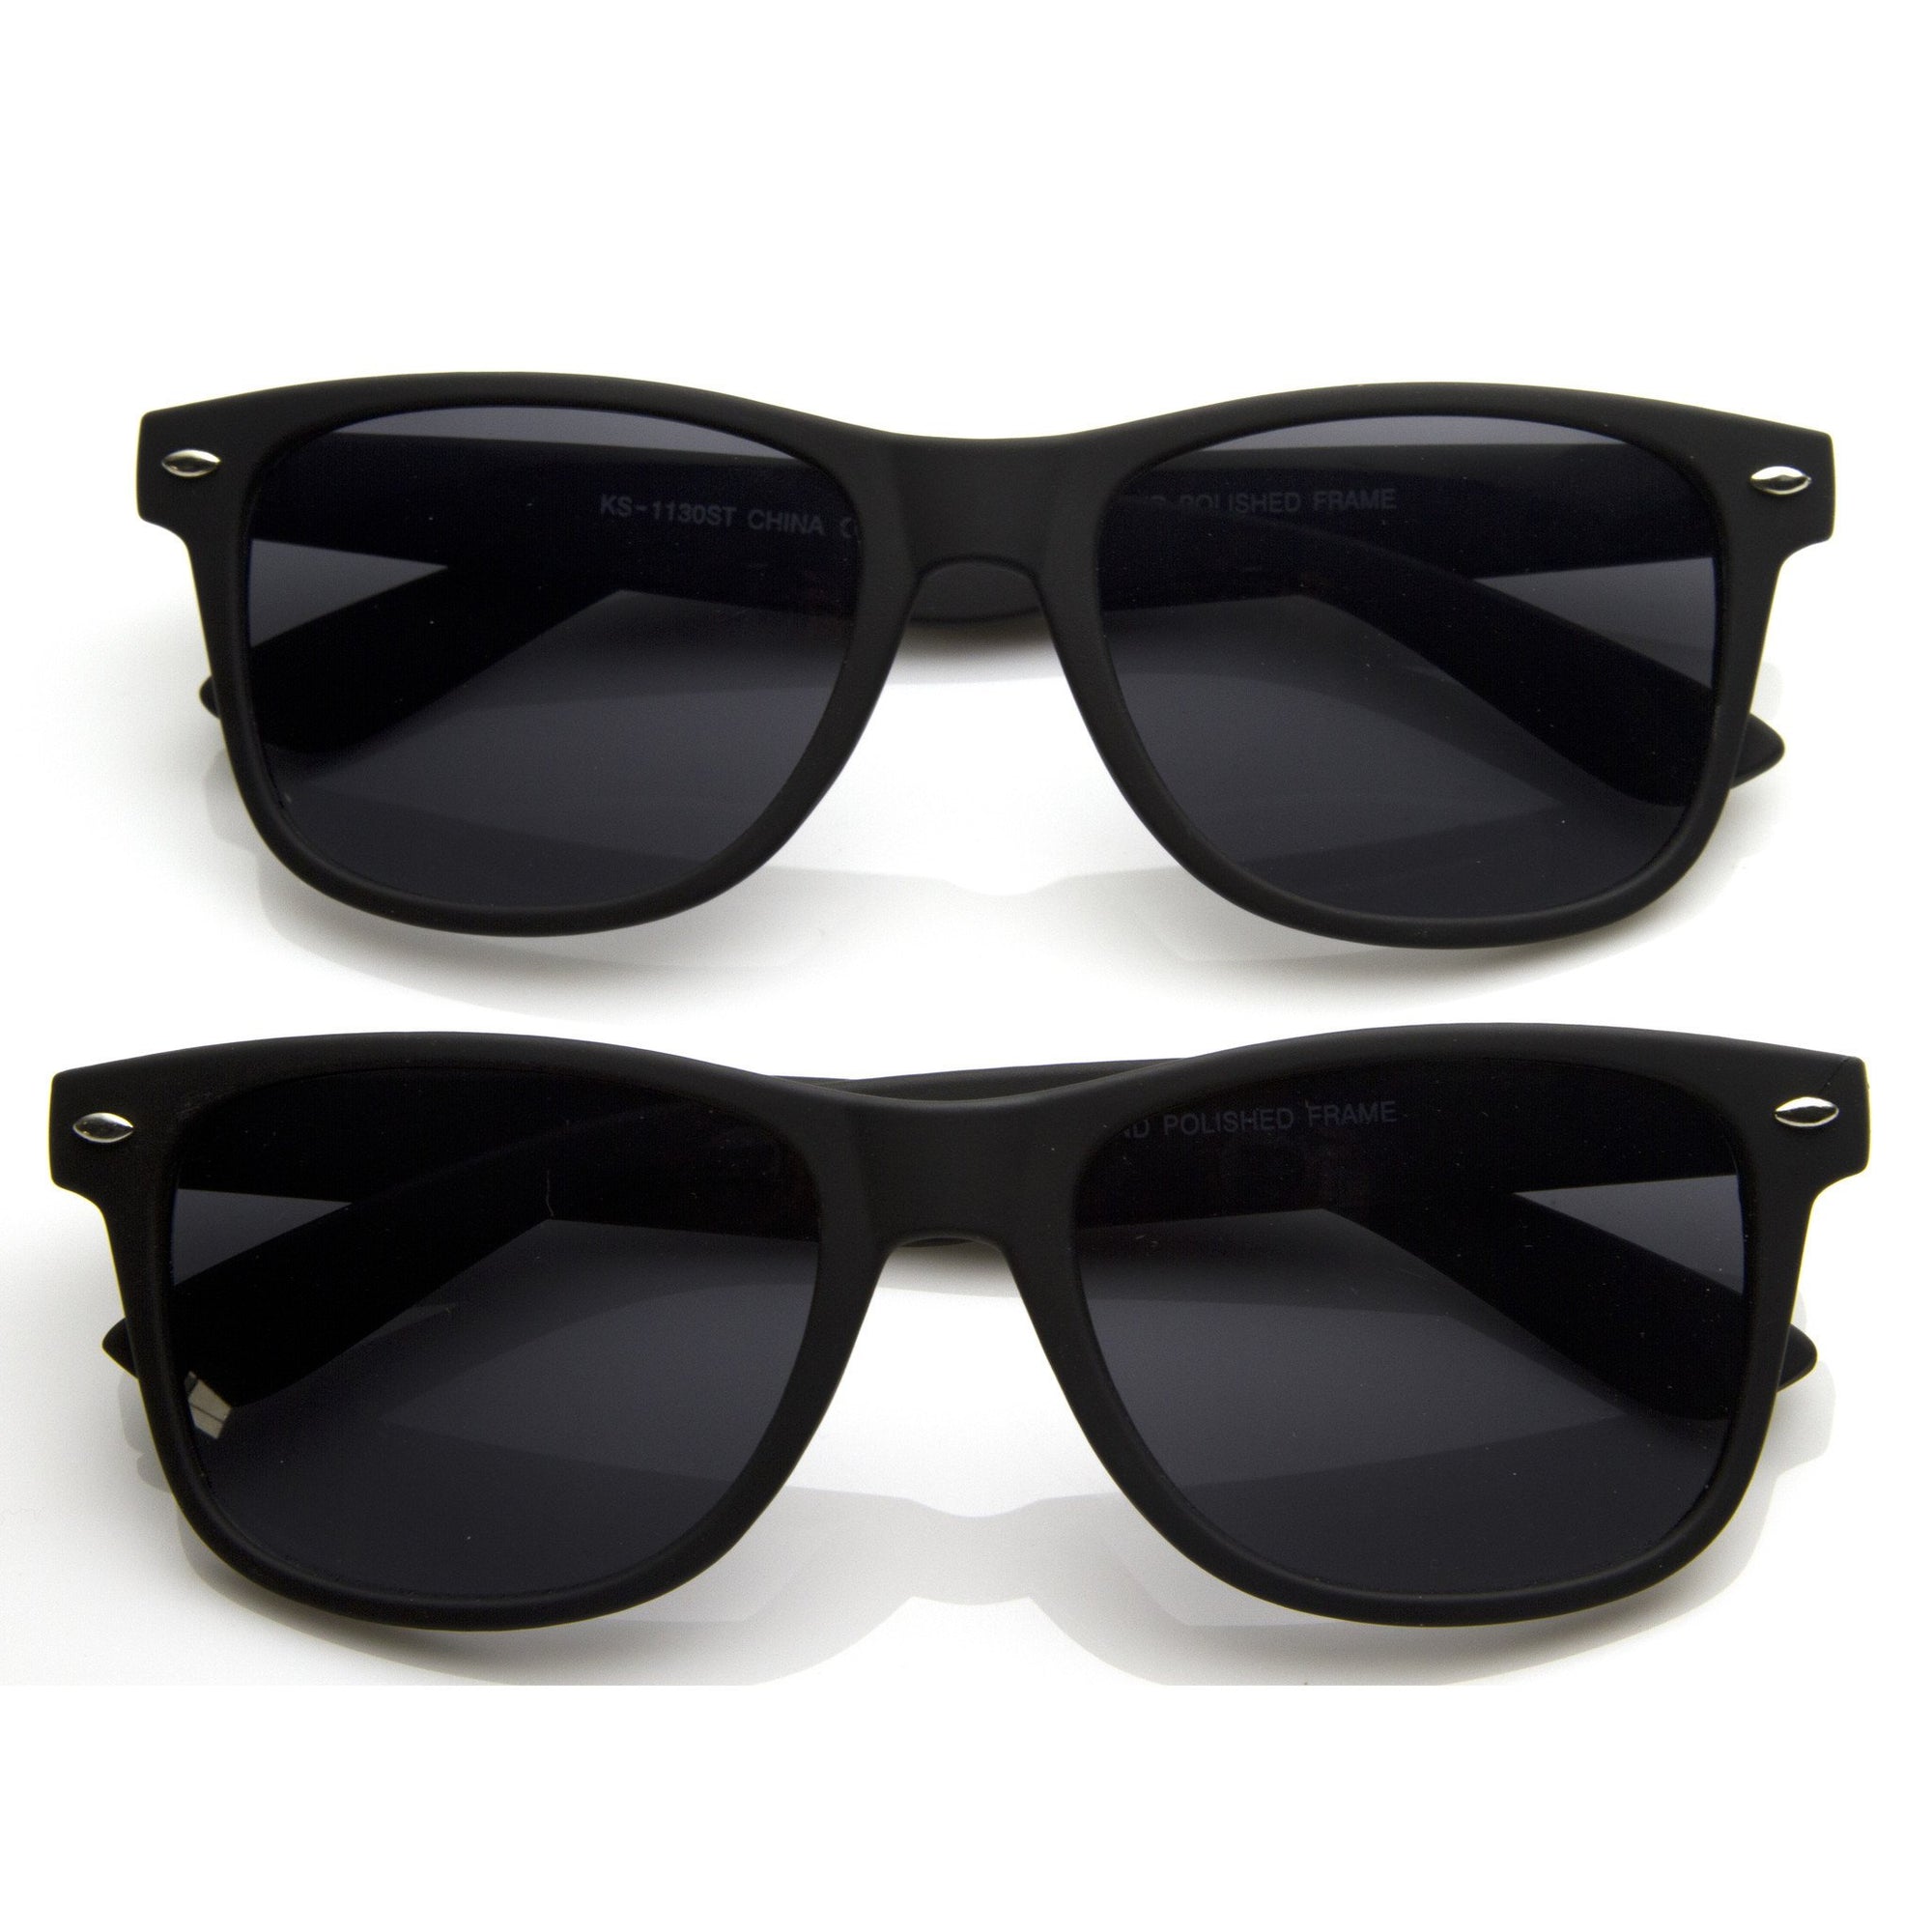 Retro Matte Flat Black Horned Rim Sunglasses 8698 [2 Pack]